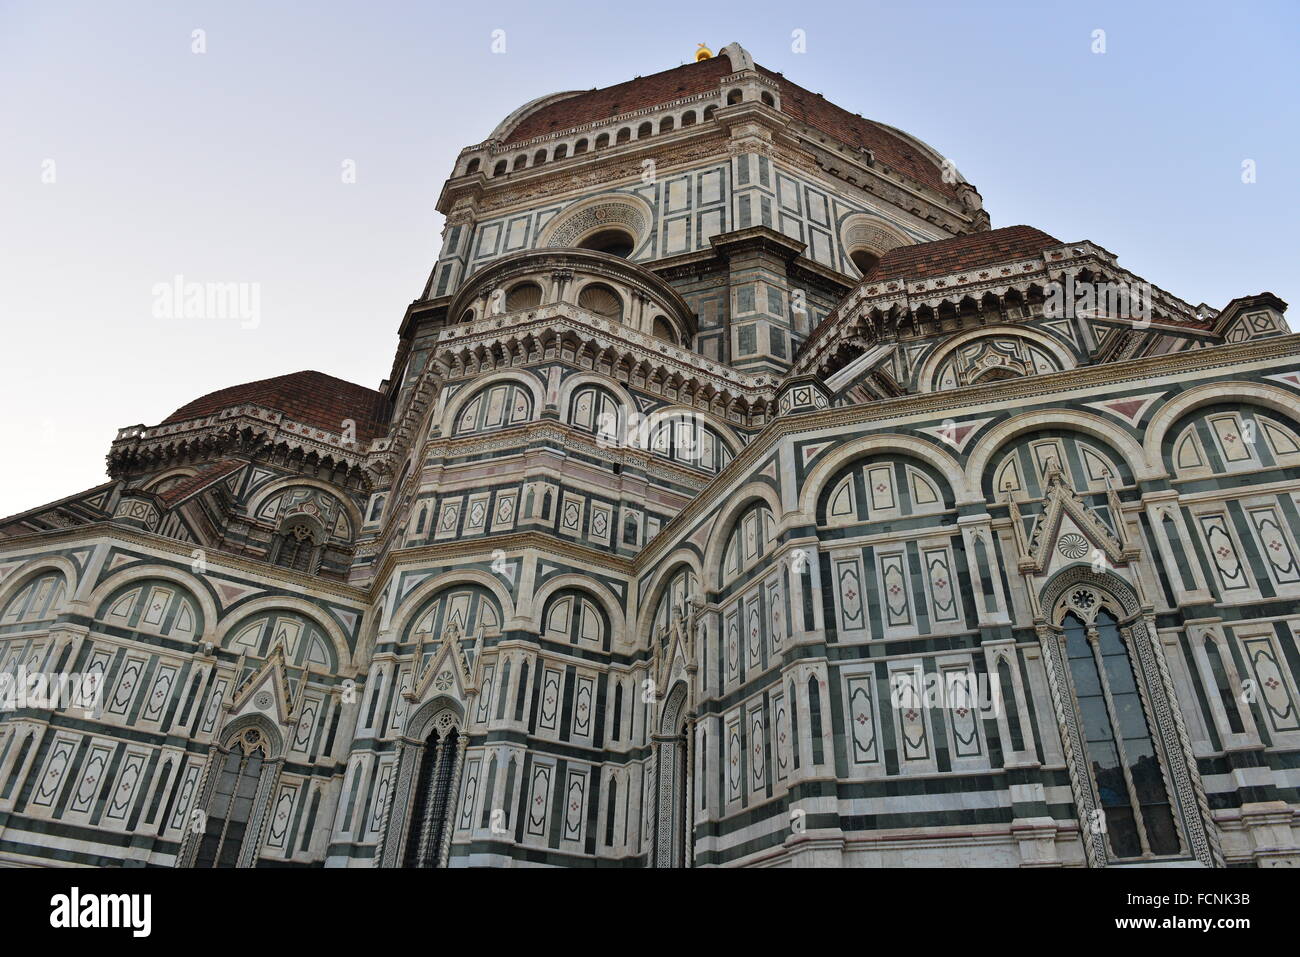 The Cattedrale di Santa Maria del Fiore, Florence, Italy Stock Photo